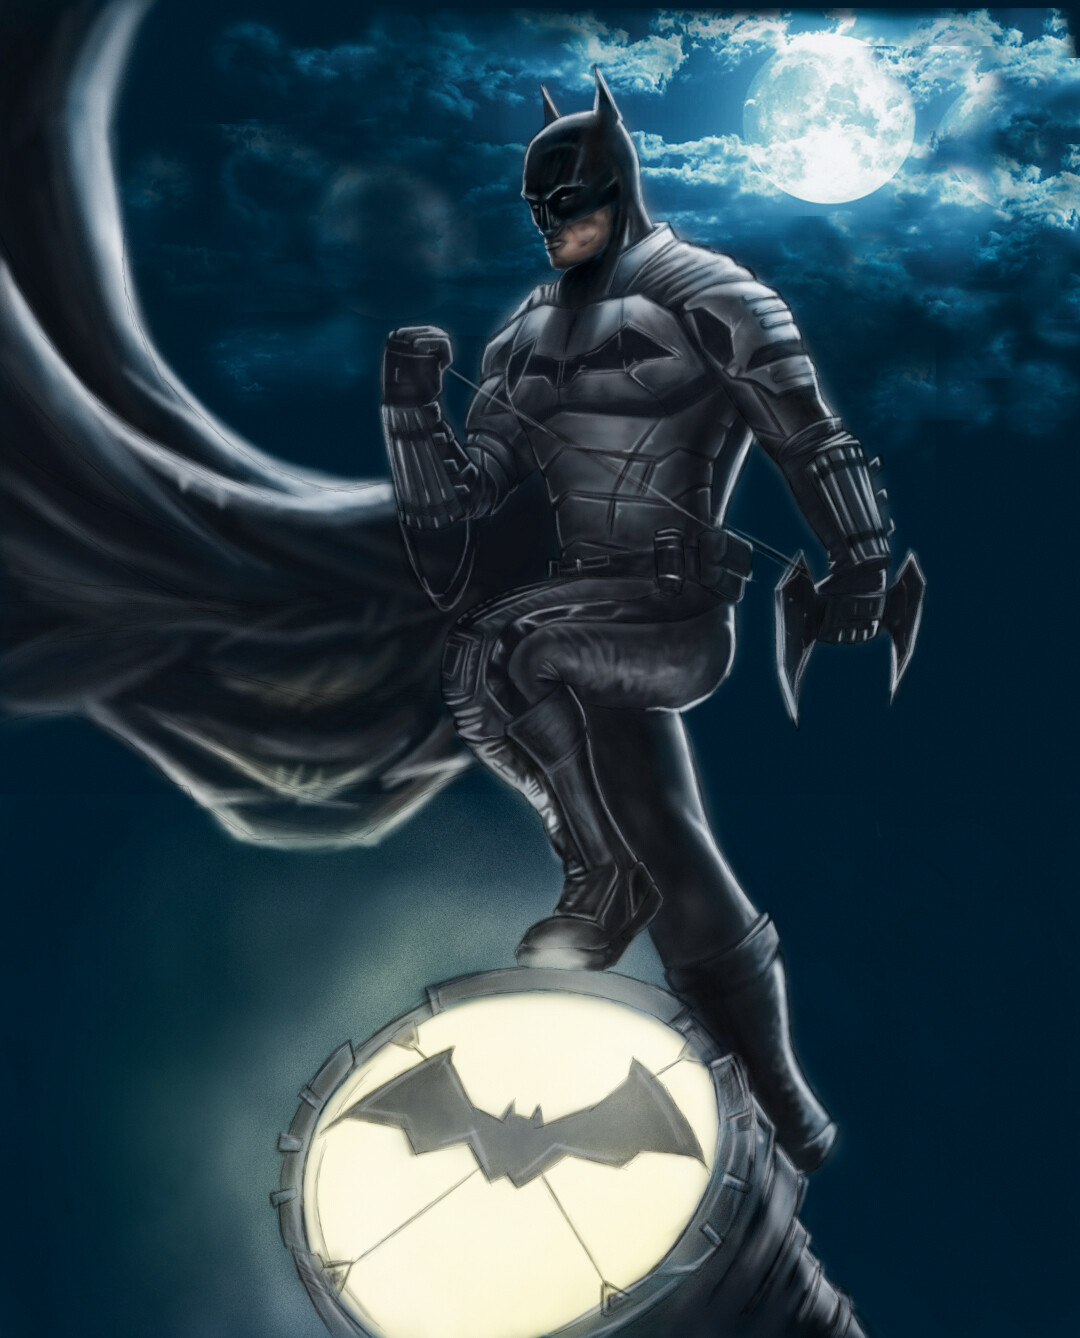 ArtStation - Batman the dark knight - concept art